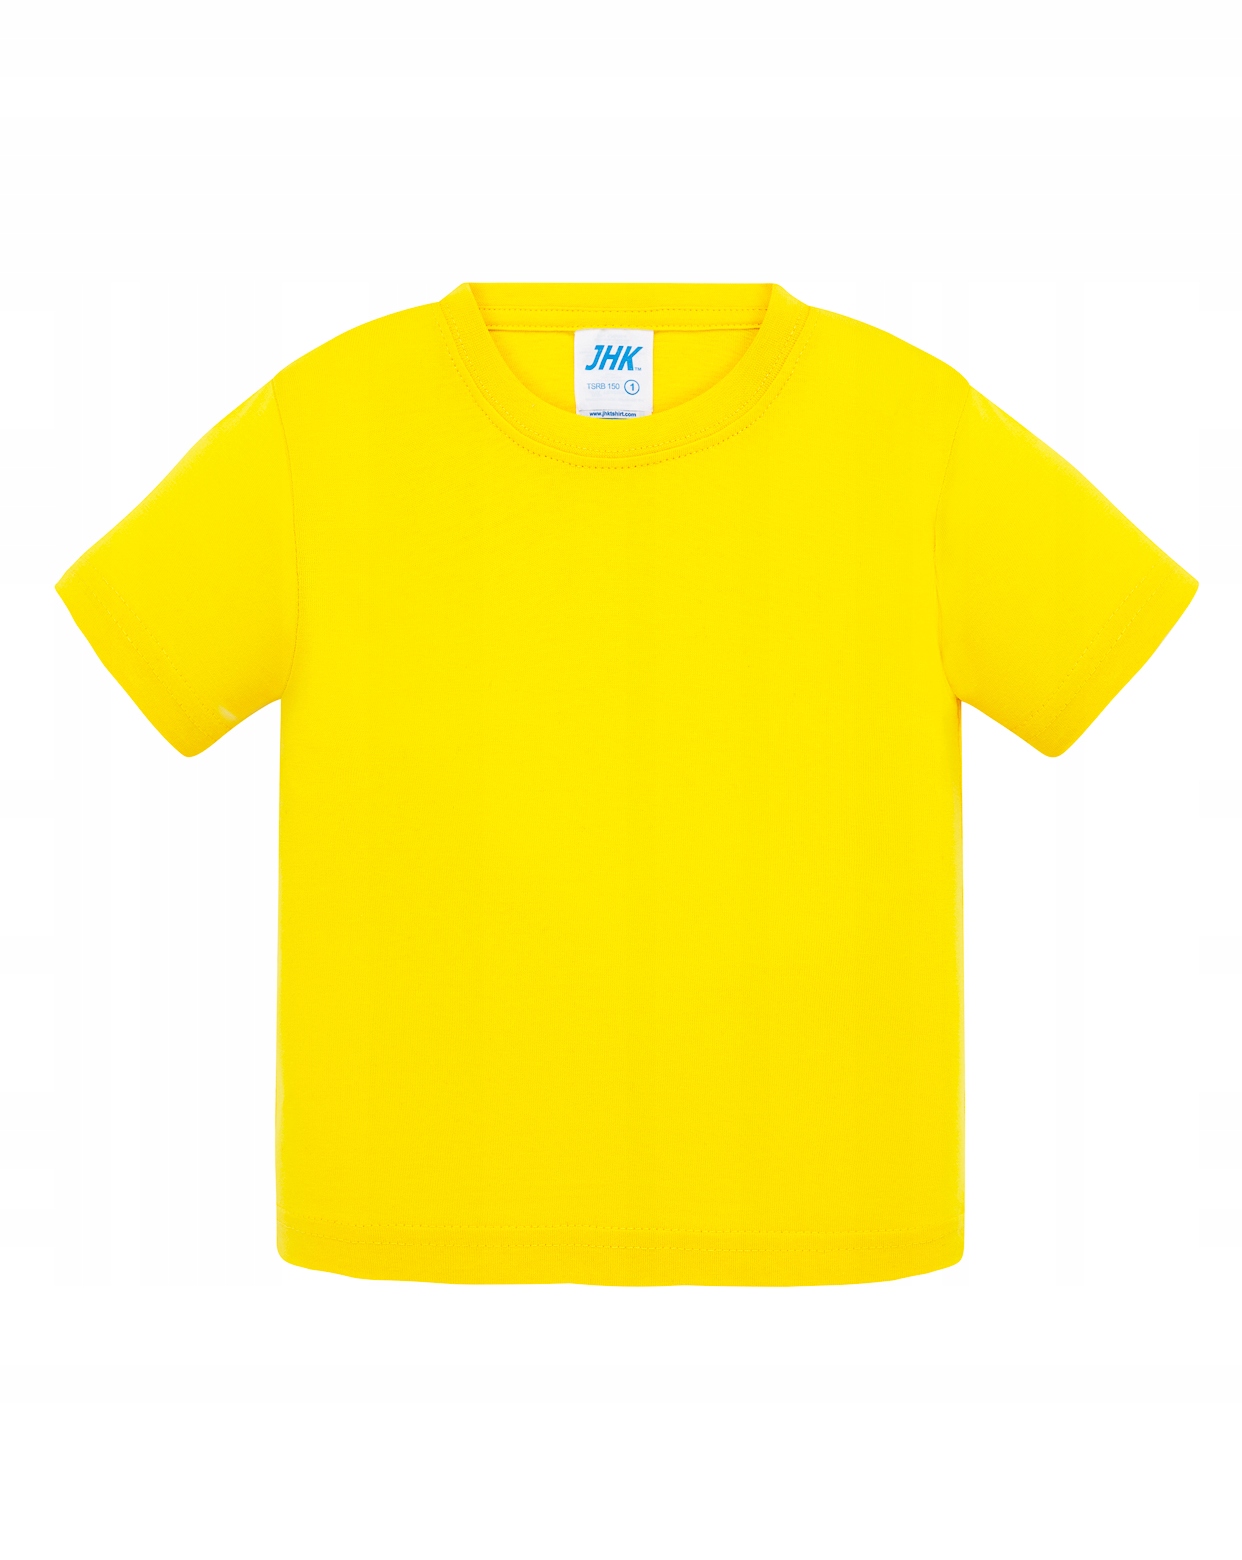 Koszulka Chłopiec 98 - T-shirty, koszulki dla dzieci - Strona 2 